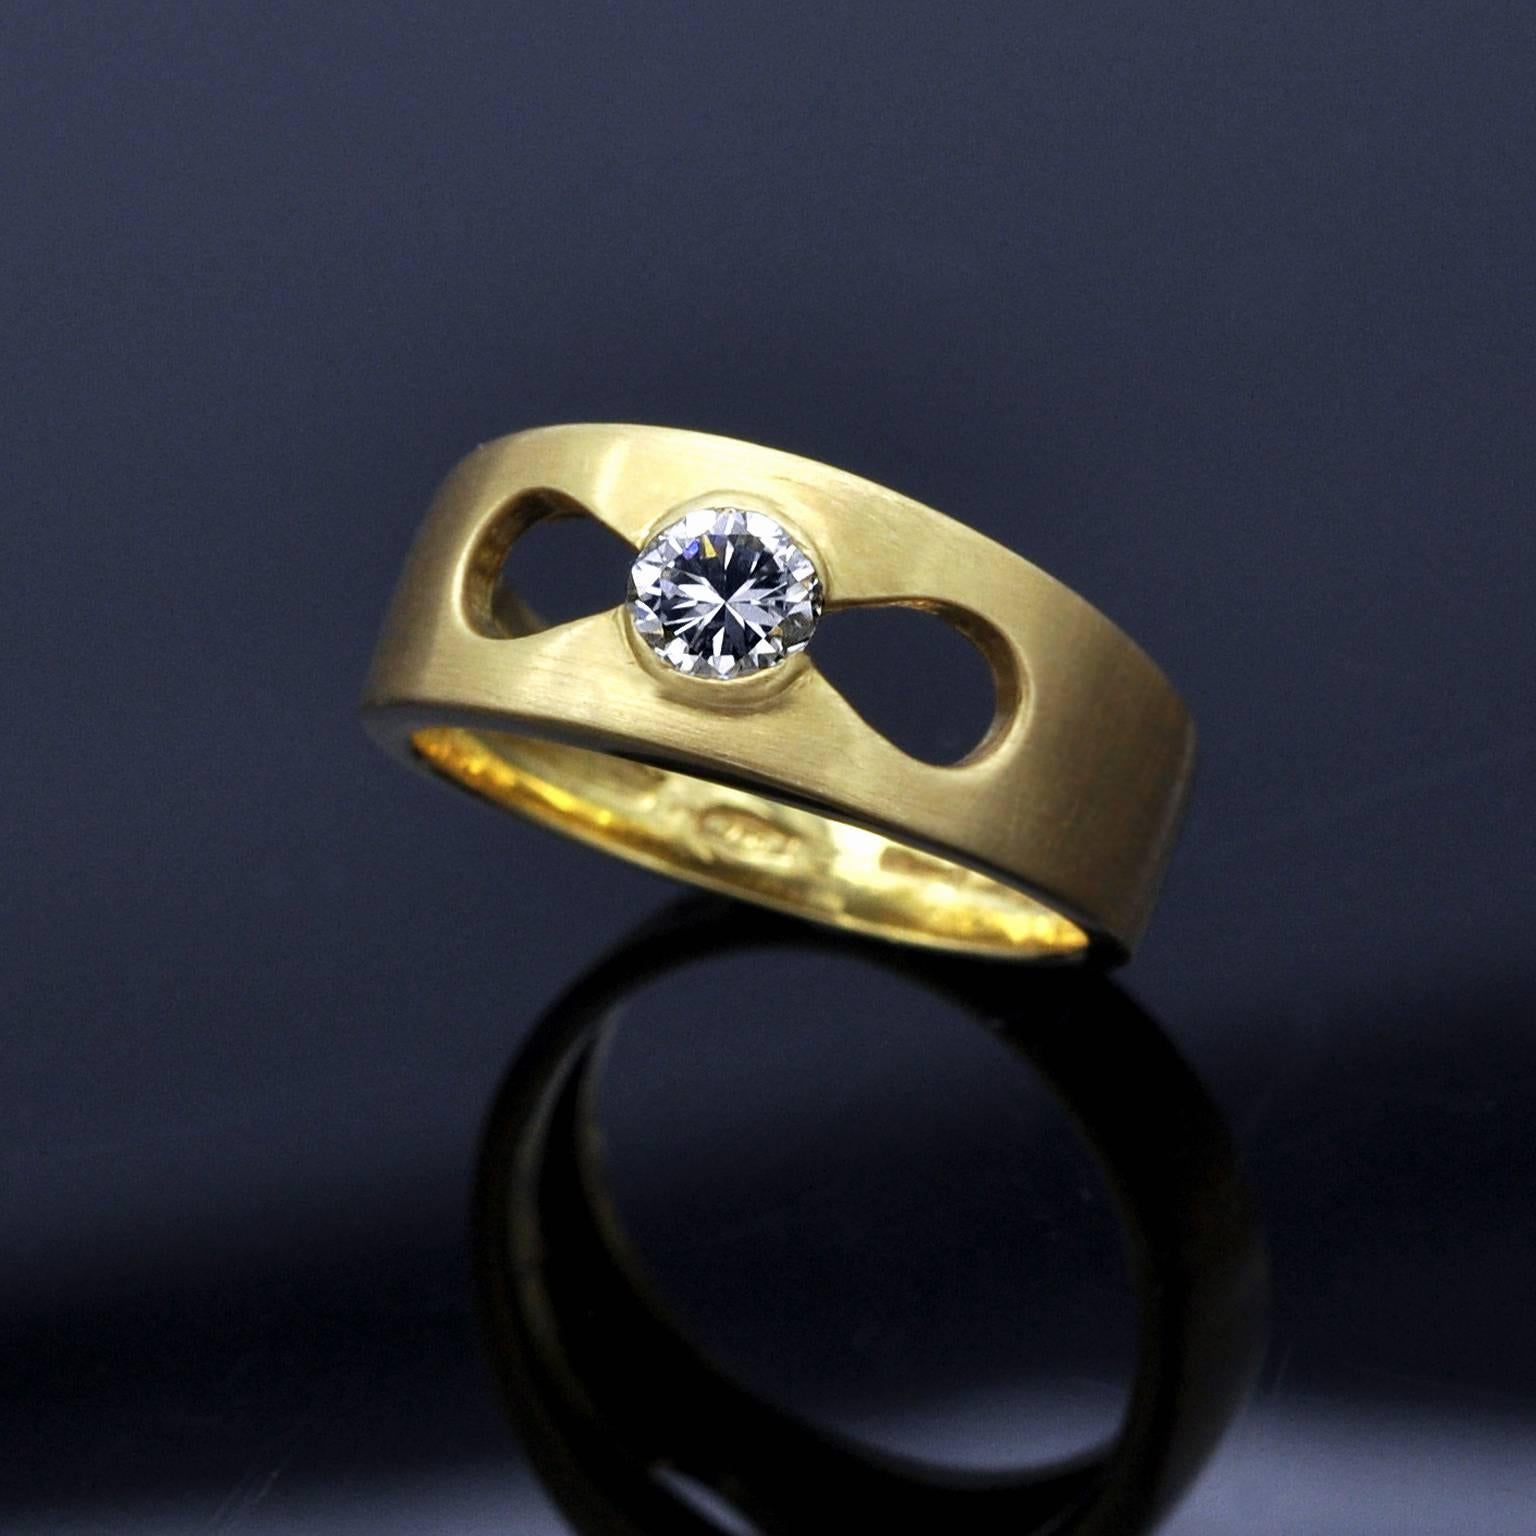 Stilvoller, moderner Solitärring: ein Ring aus 18 Karat gebürstetem Gelbgold mit polierten Seiten, die die  ein Diamant von 0,35 Karat (F G VS2)  in einer anmutig gestalteten Öffnung. 
Gewicht : 6.65 Gramm